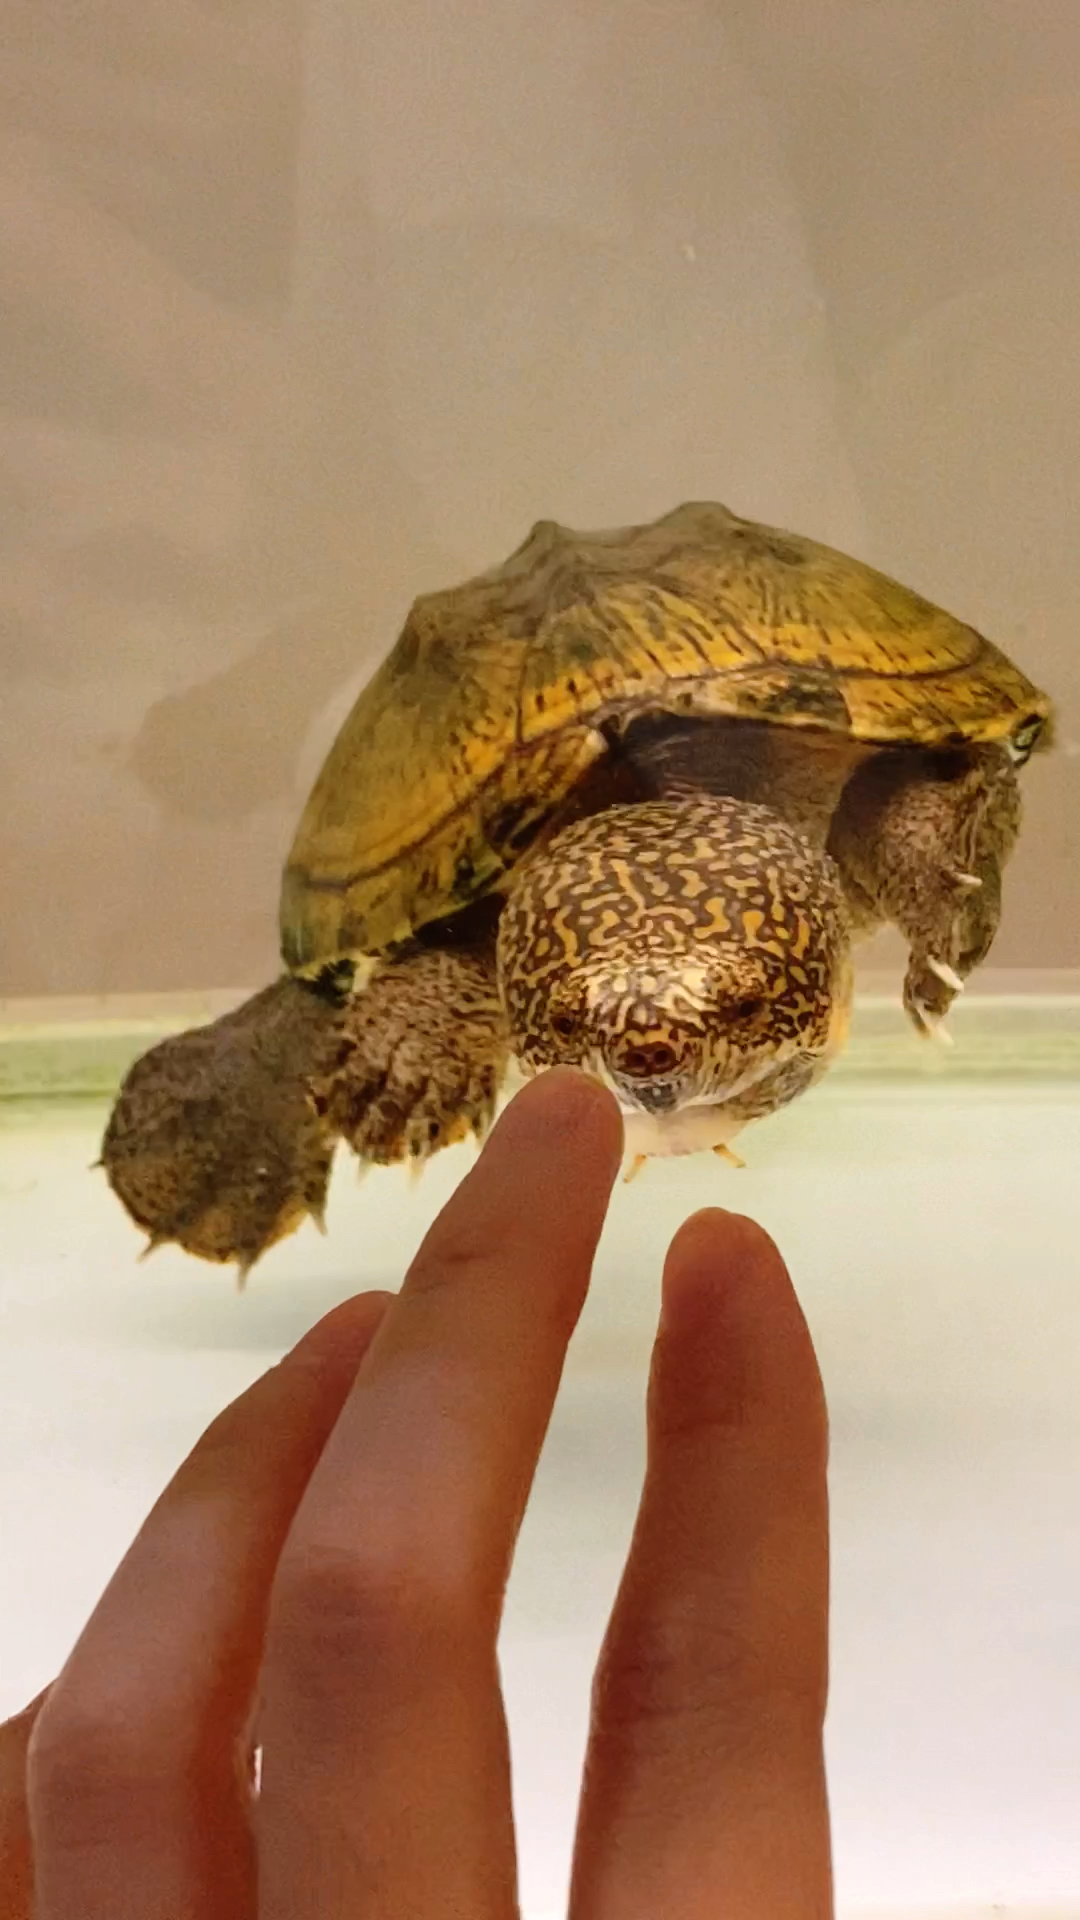 萨尔文蛋龟饲养环境图片